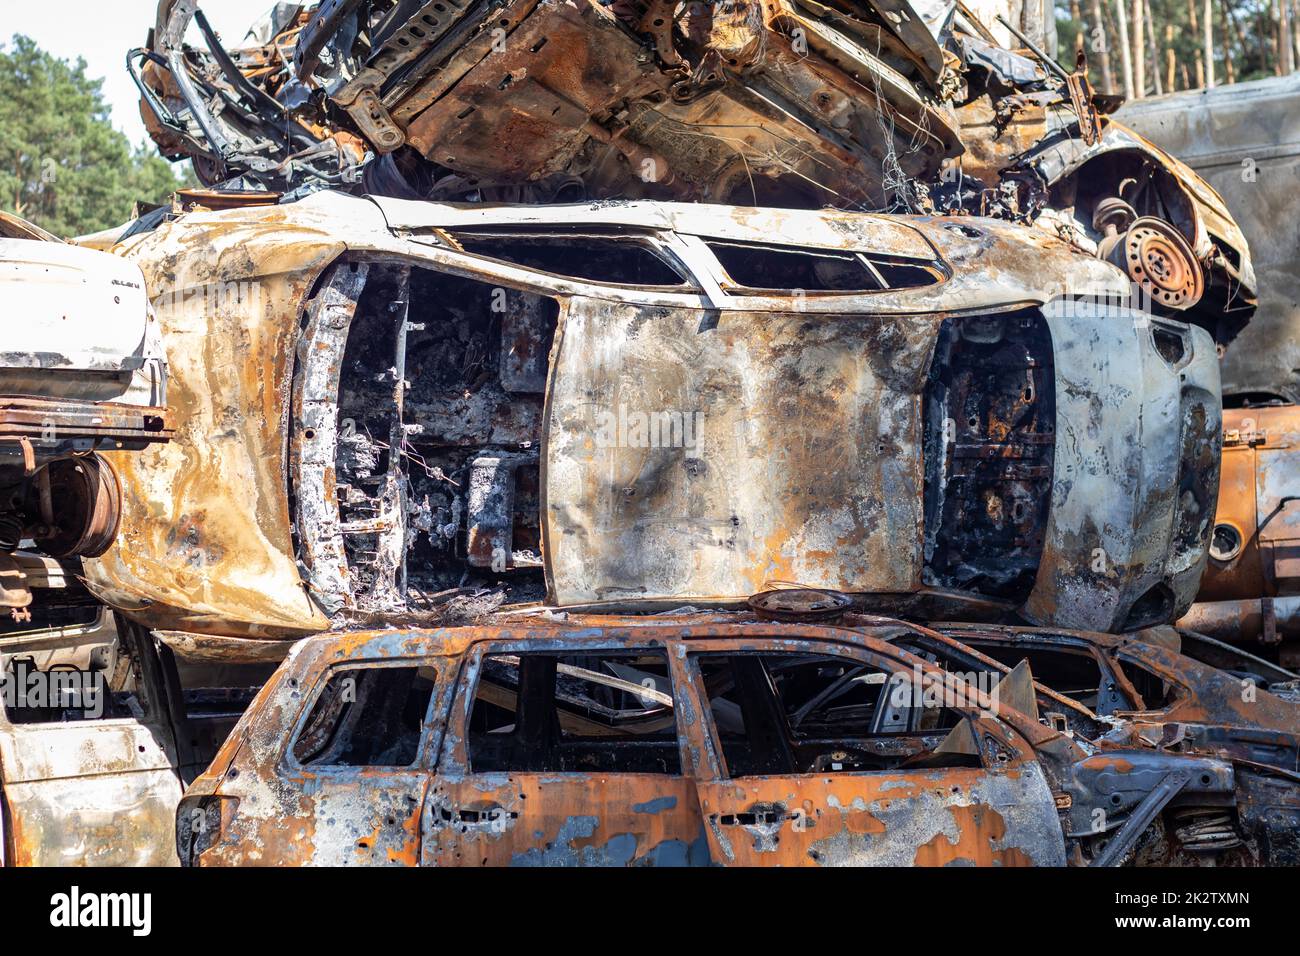 Molte auto arrugginite bruciate a Irpen, dopo essere state uccidite dai militari russi. La guerra della Russia contro l'Ucraina. Cimitero di auto distrutte di civili che hanno cercato di evacuare dalla zona di guerra. Foto Stock